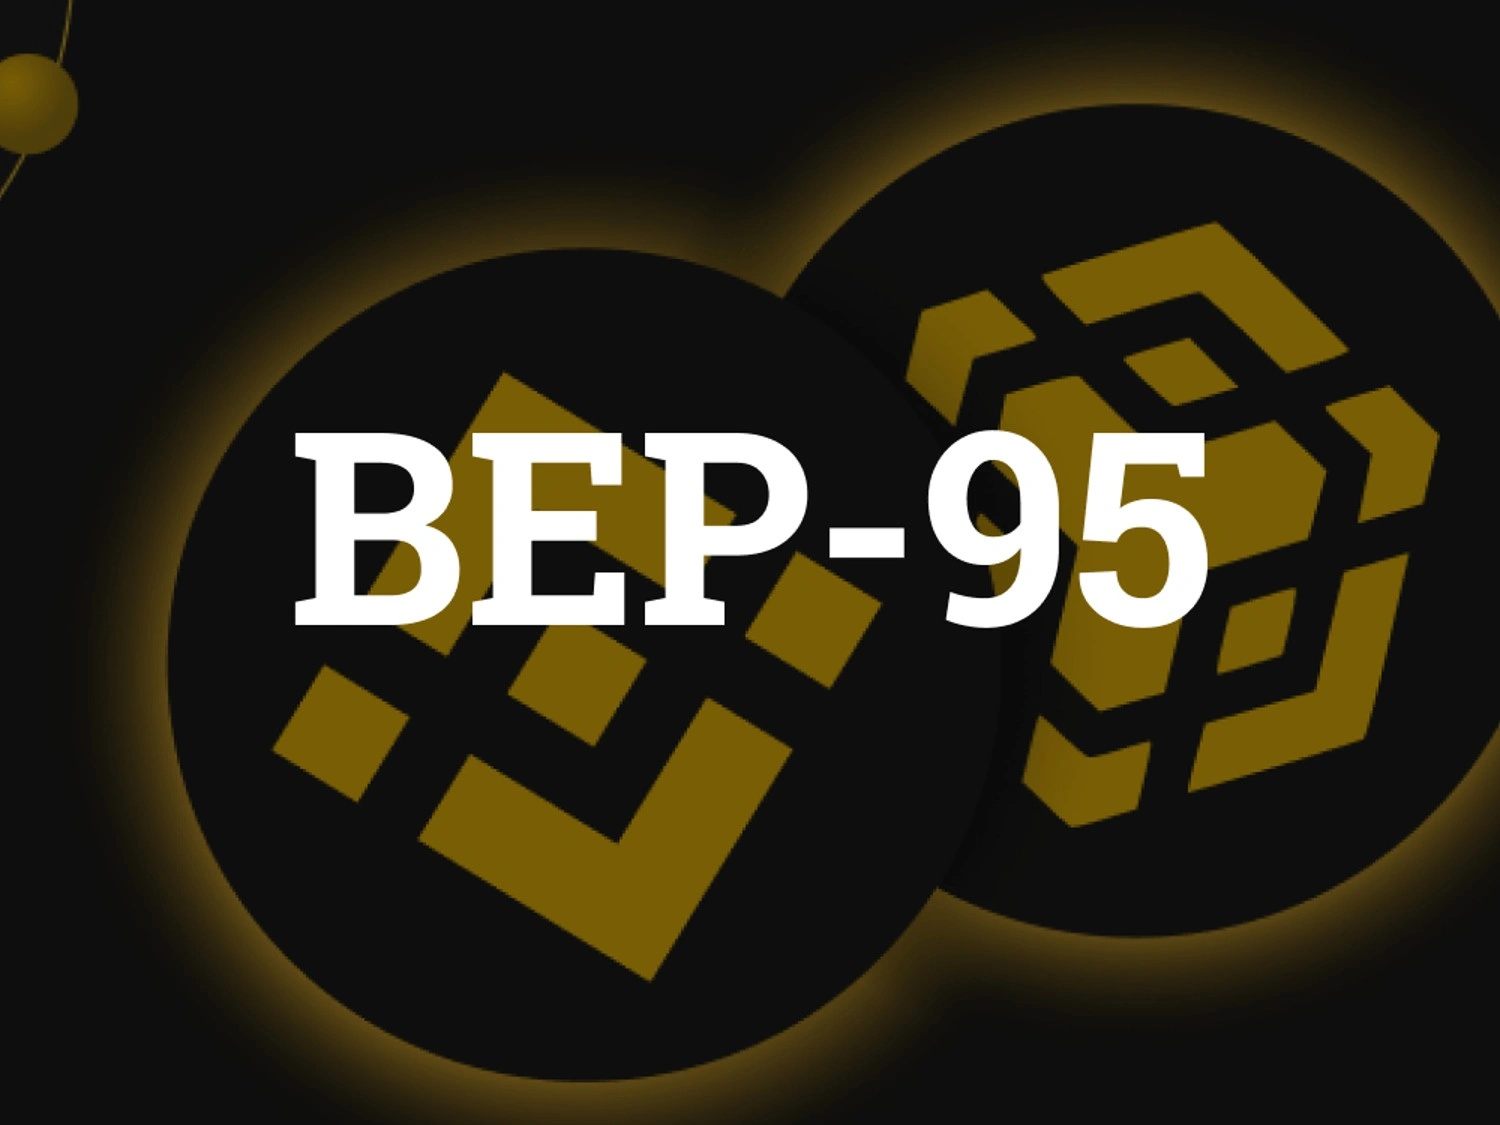 BEP-95